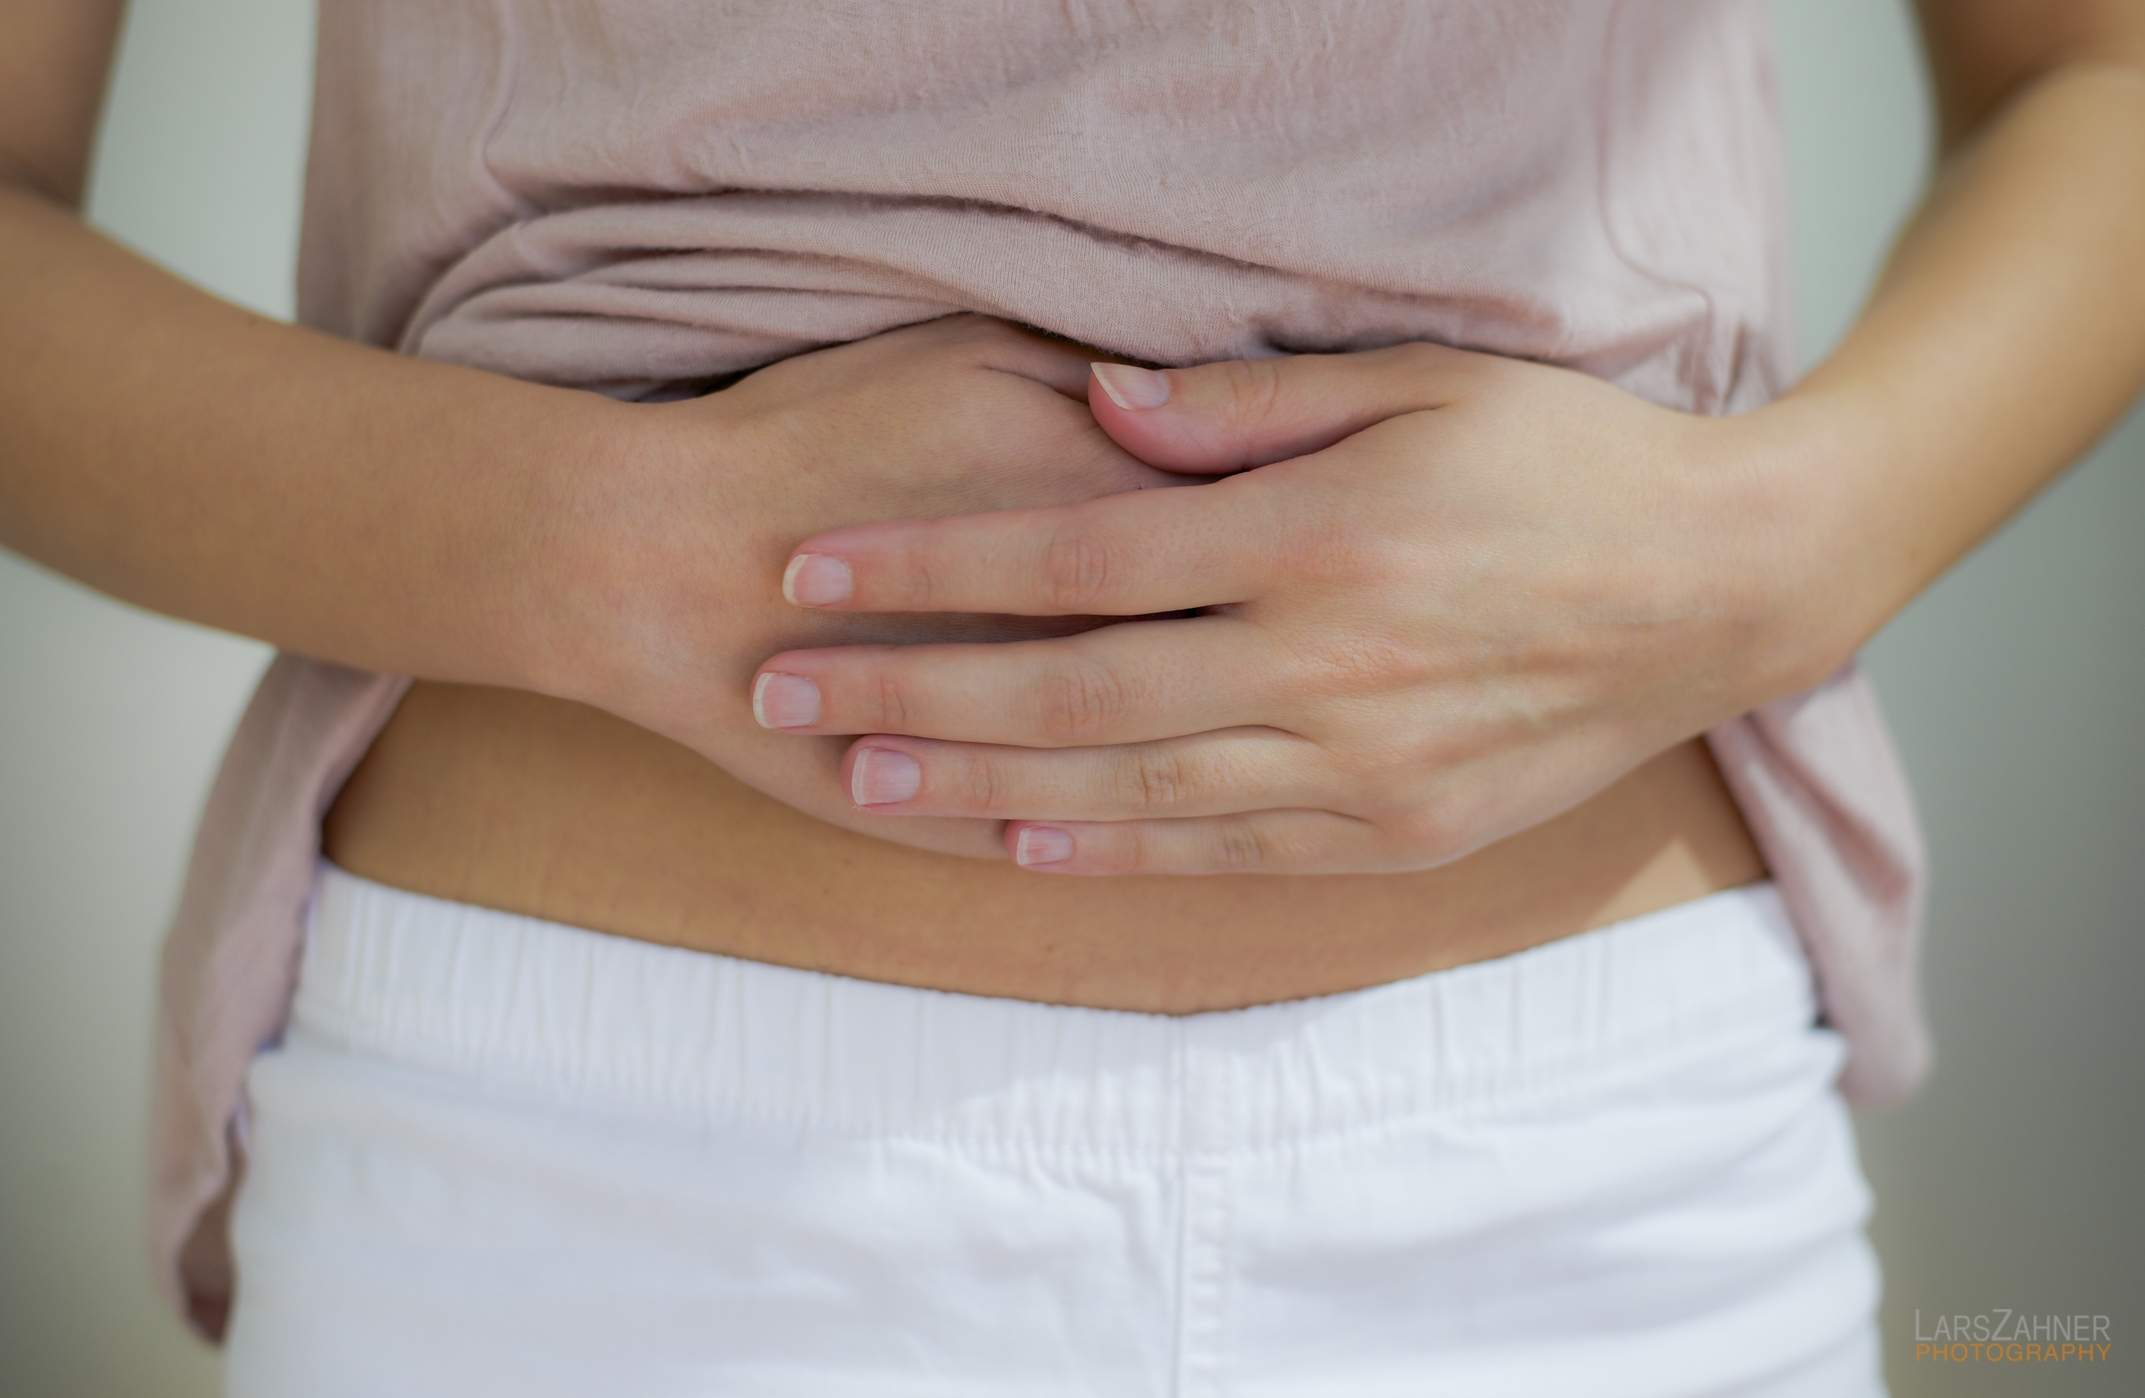 Estresse e ansiedade so fatores de risco para a endometriose CLAUDIA